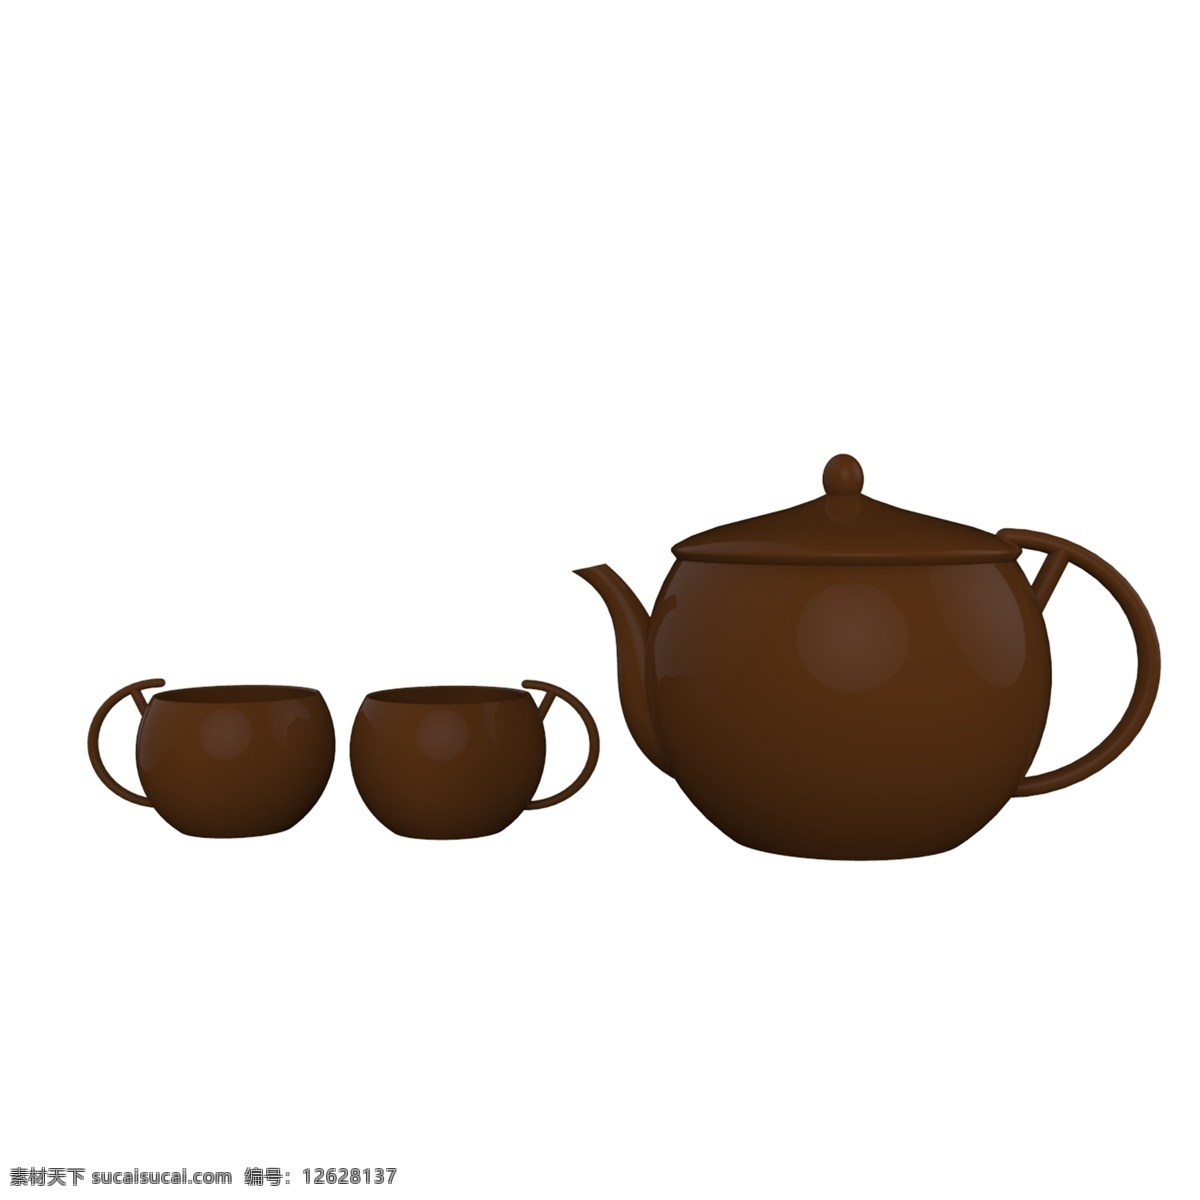 紫砂壶 茶壶 免 抠 图案 水壶 壶 小水壶 喝水 养生 泡茶 茶叶 健康 茶饮 茶壶模型 陶瓷水壶 绍兴壶